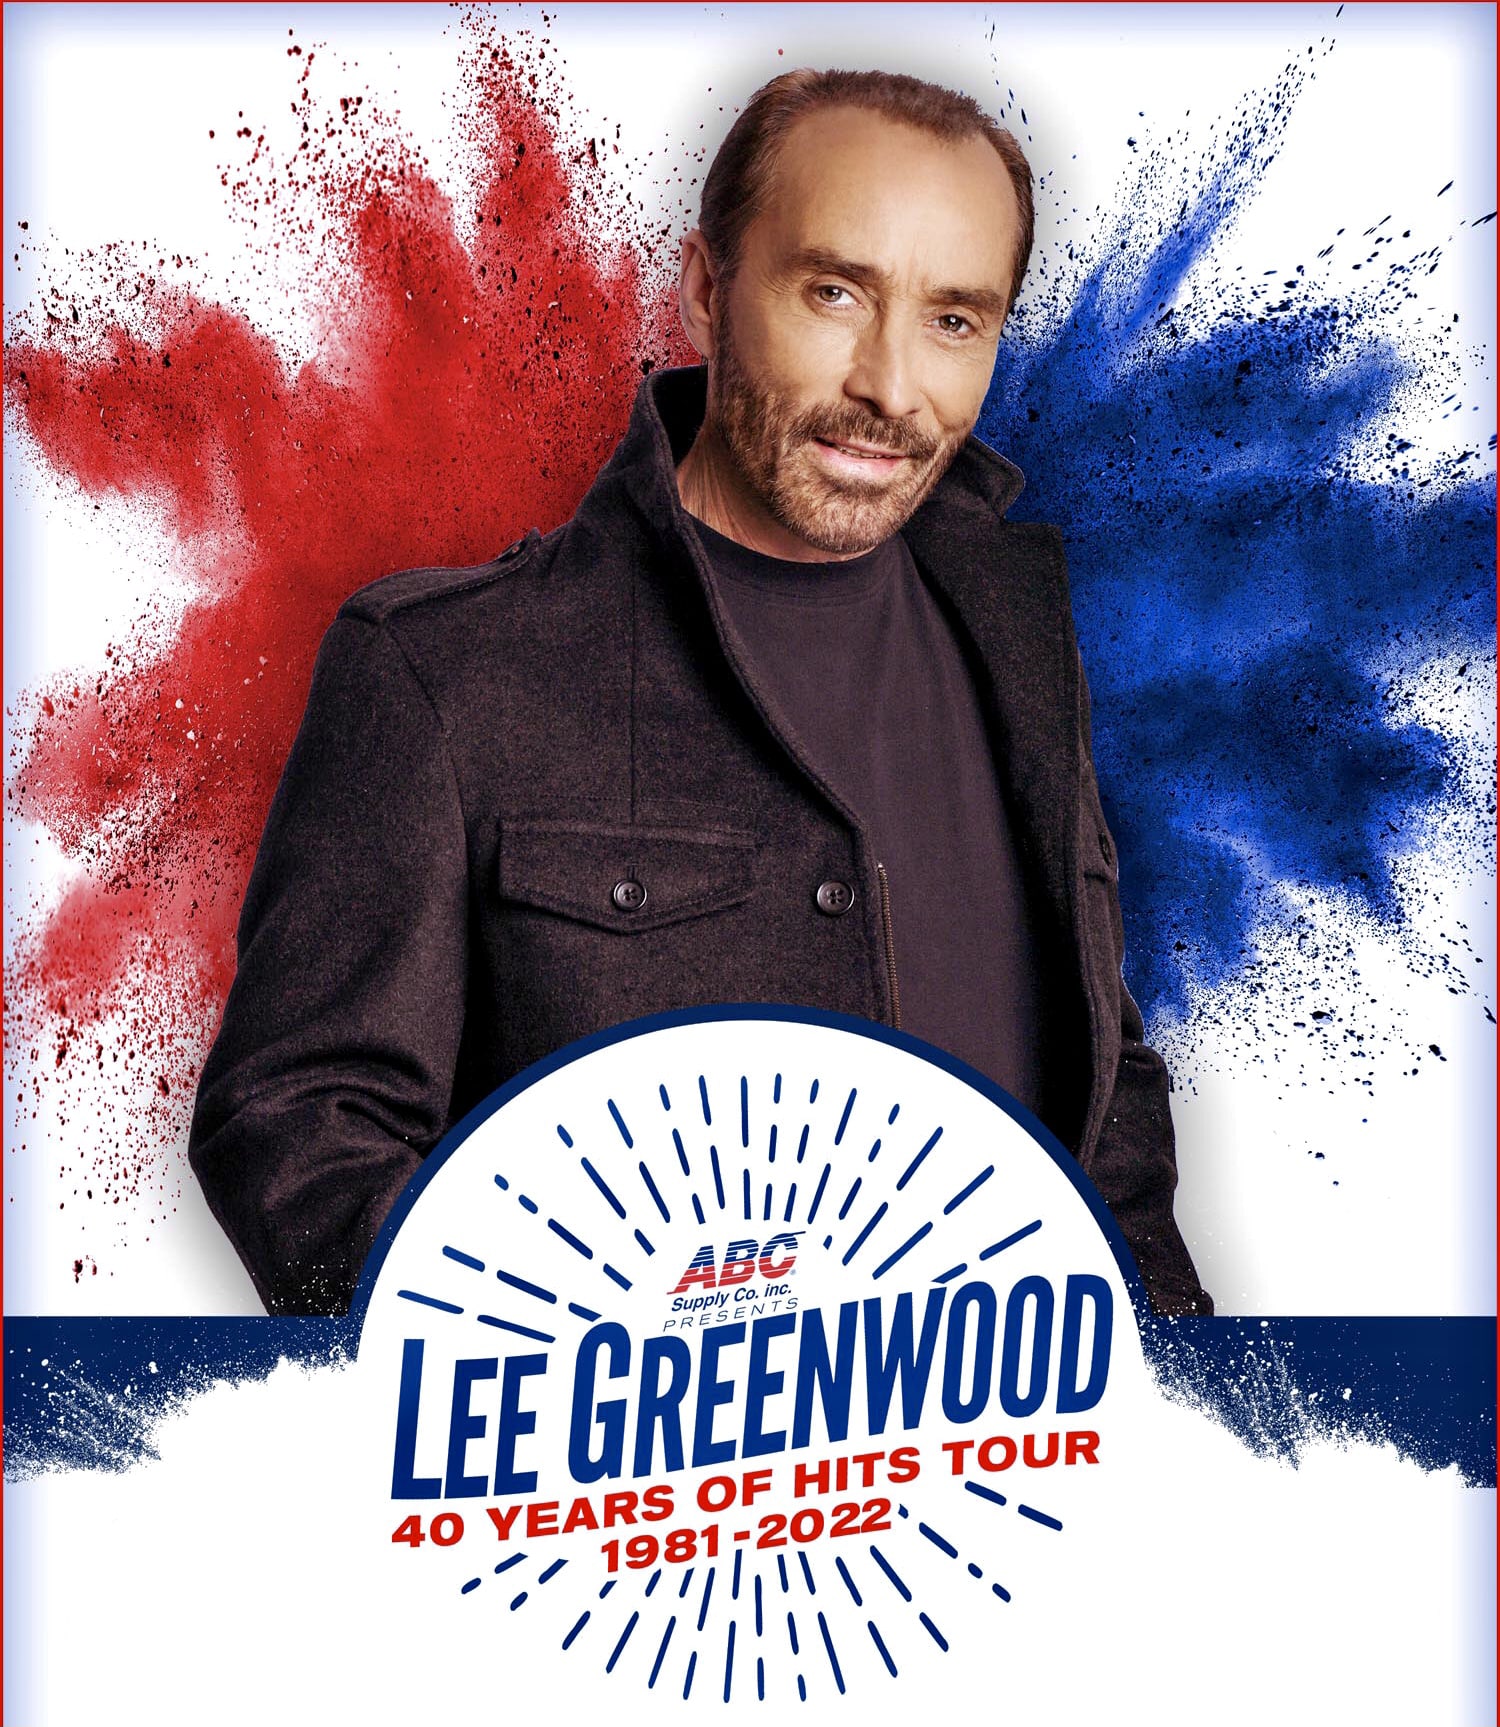 Elko Concerts Presents: Lee Greenwood